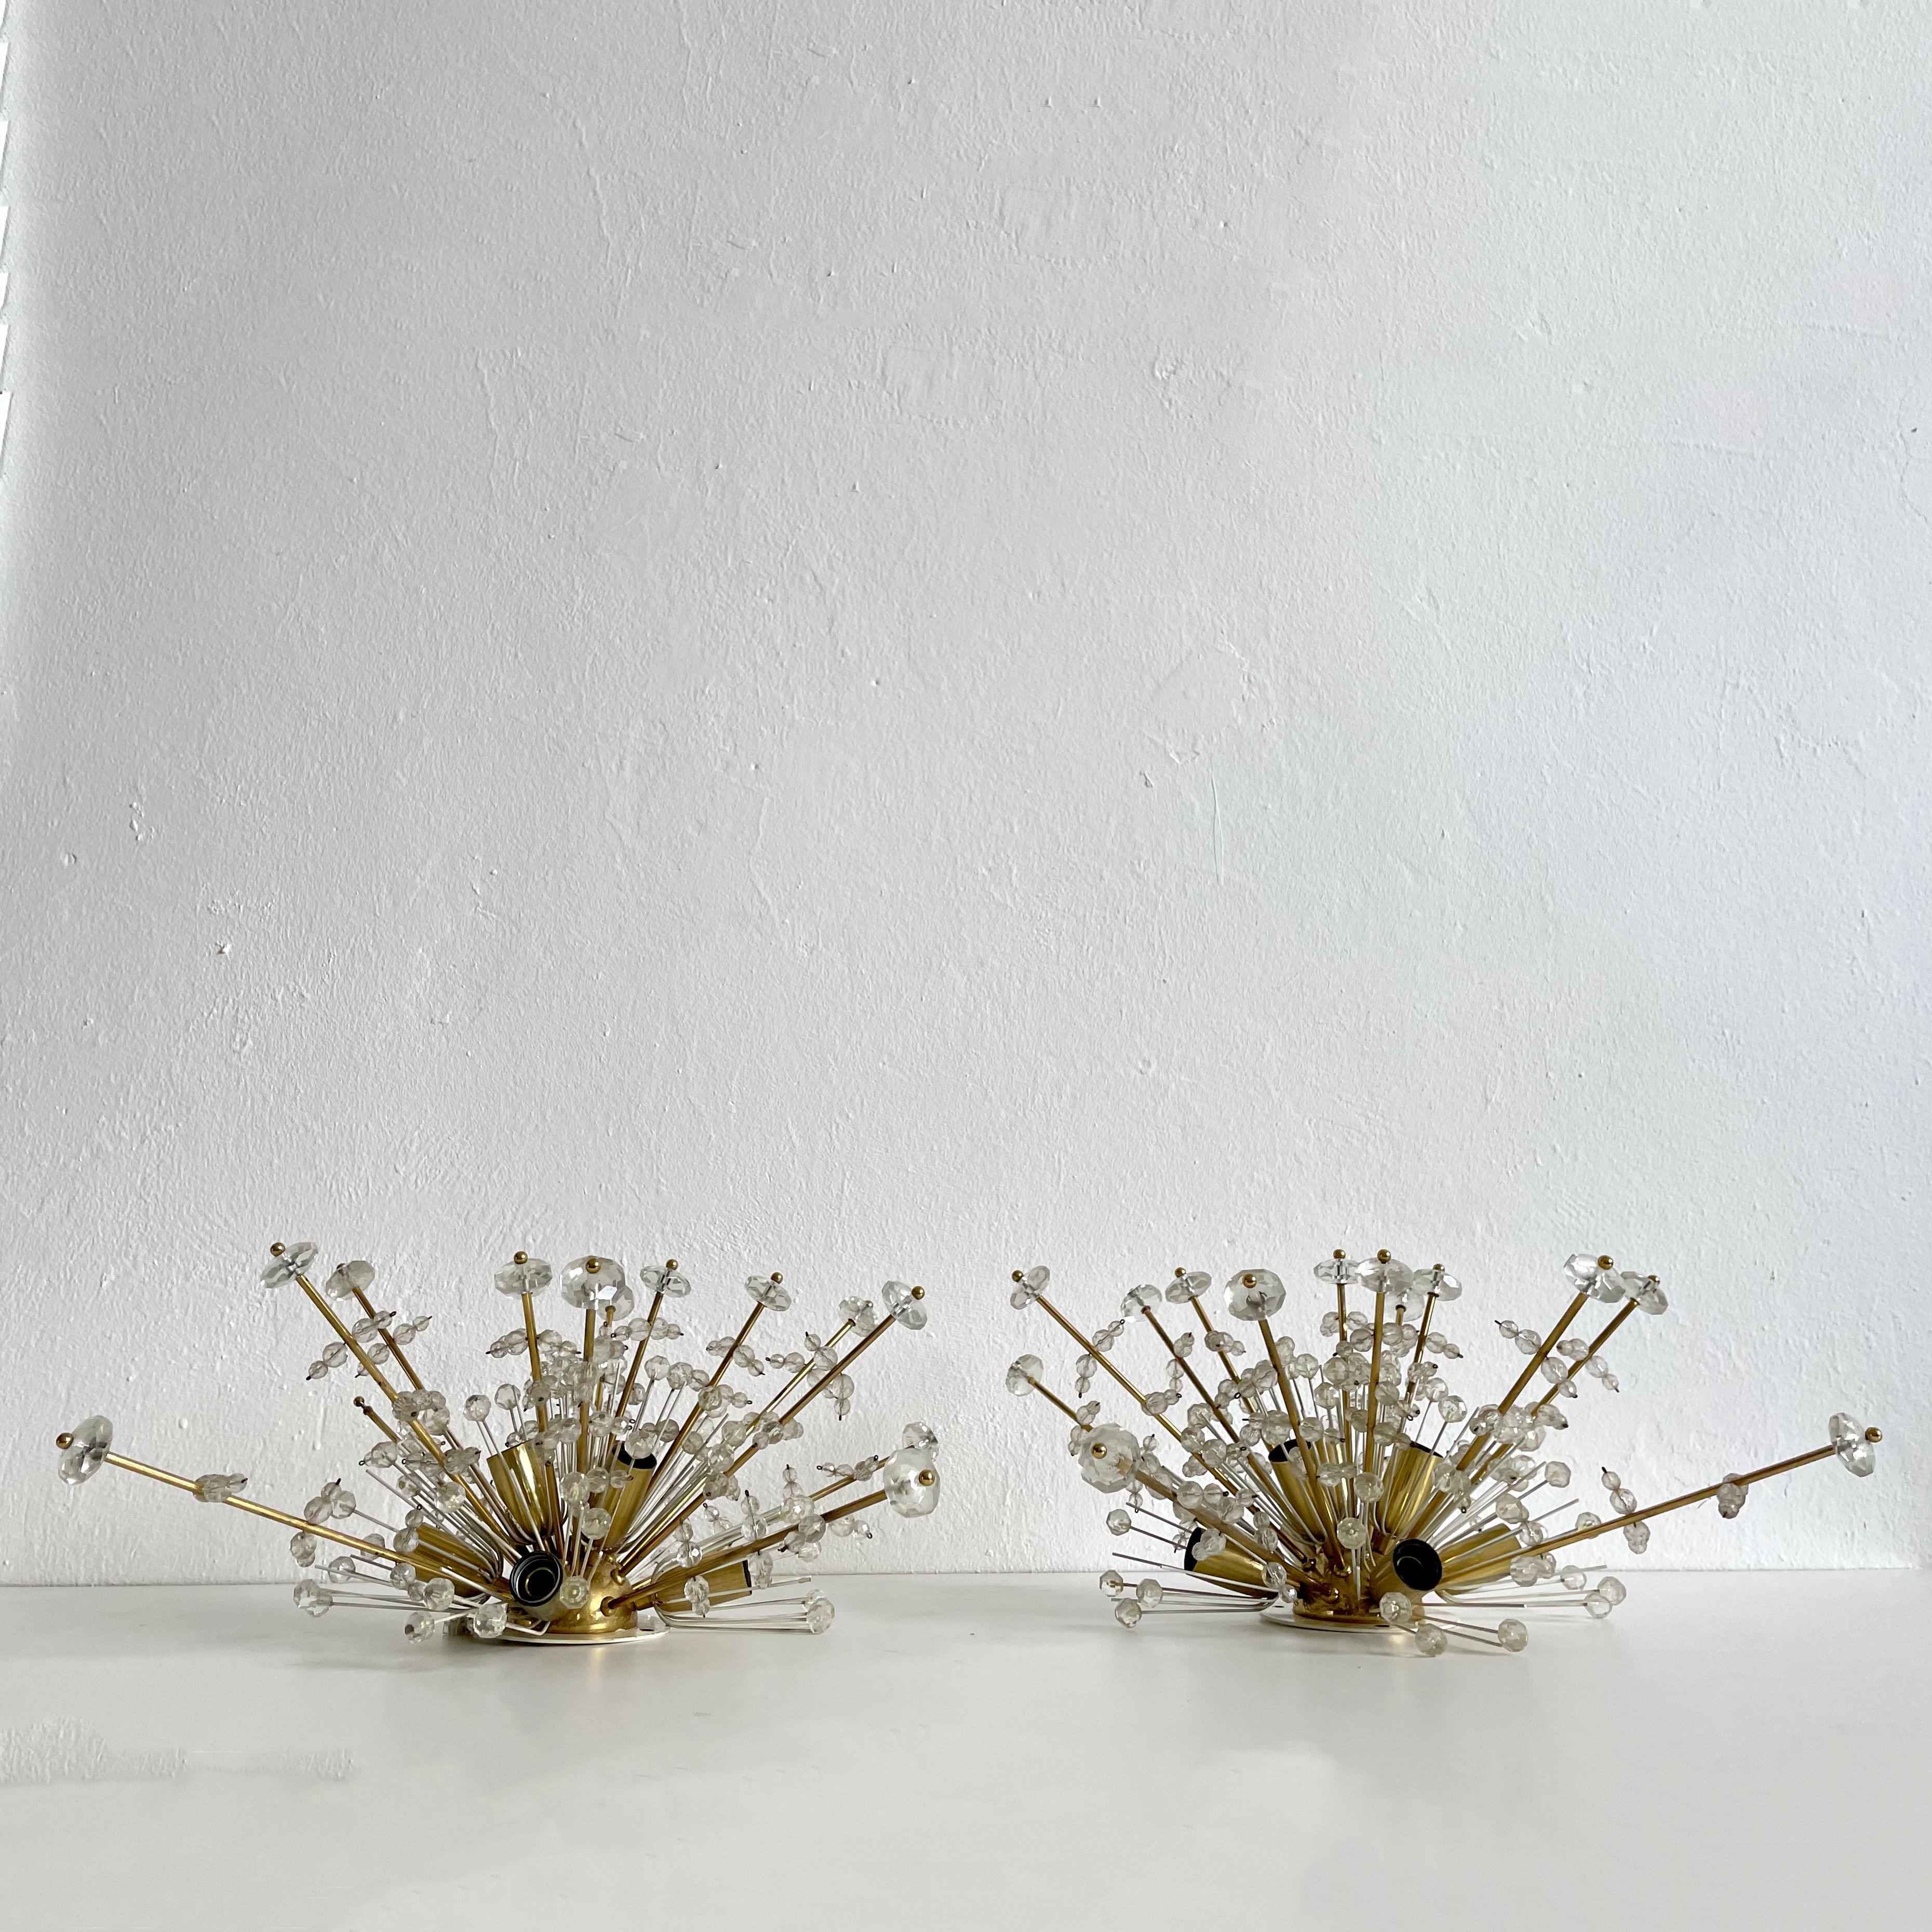 Paar Schneeflocken-Kristallleuchten, entworfen von Emil Stejnar und hergestellt von Nikoll, Österreich 1950er Jahre

Die Lampen haben 7 Lampenfassungen für Standard Edison E14 Glühbirnen

Beide Lampen sind in sehr gutem Originalzustand und voll